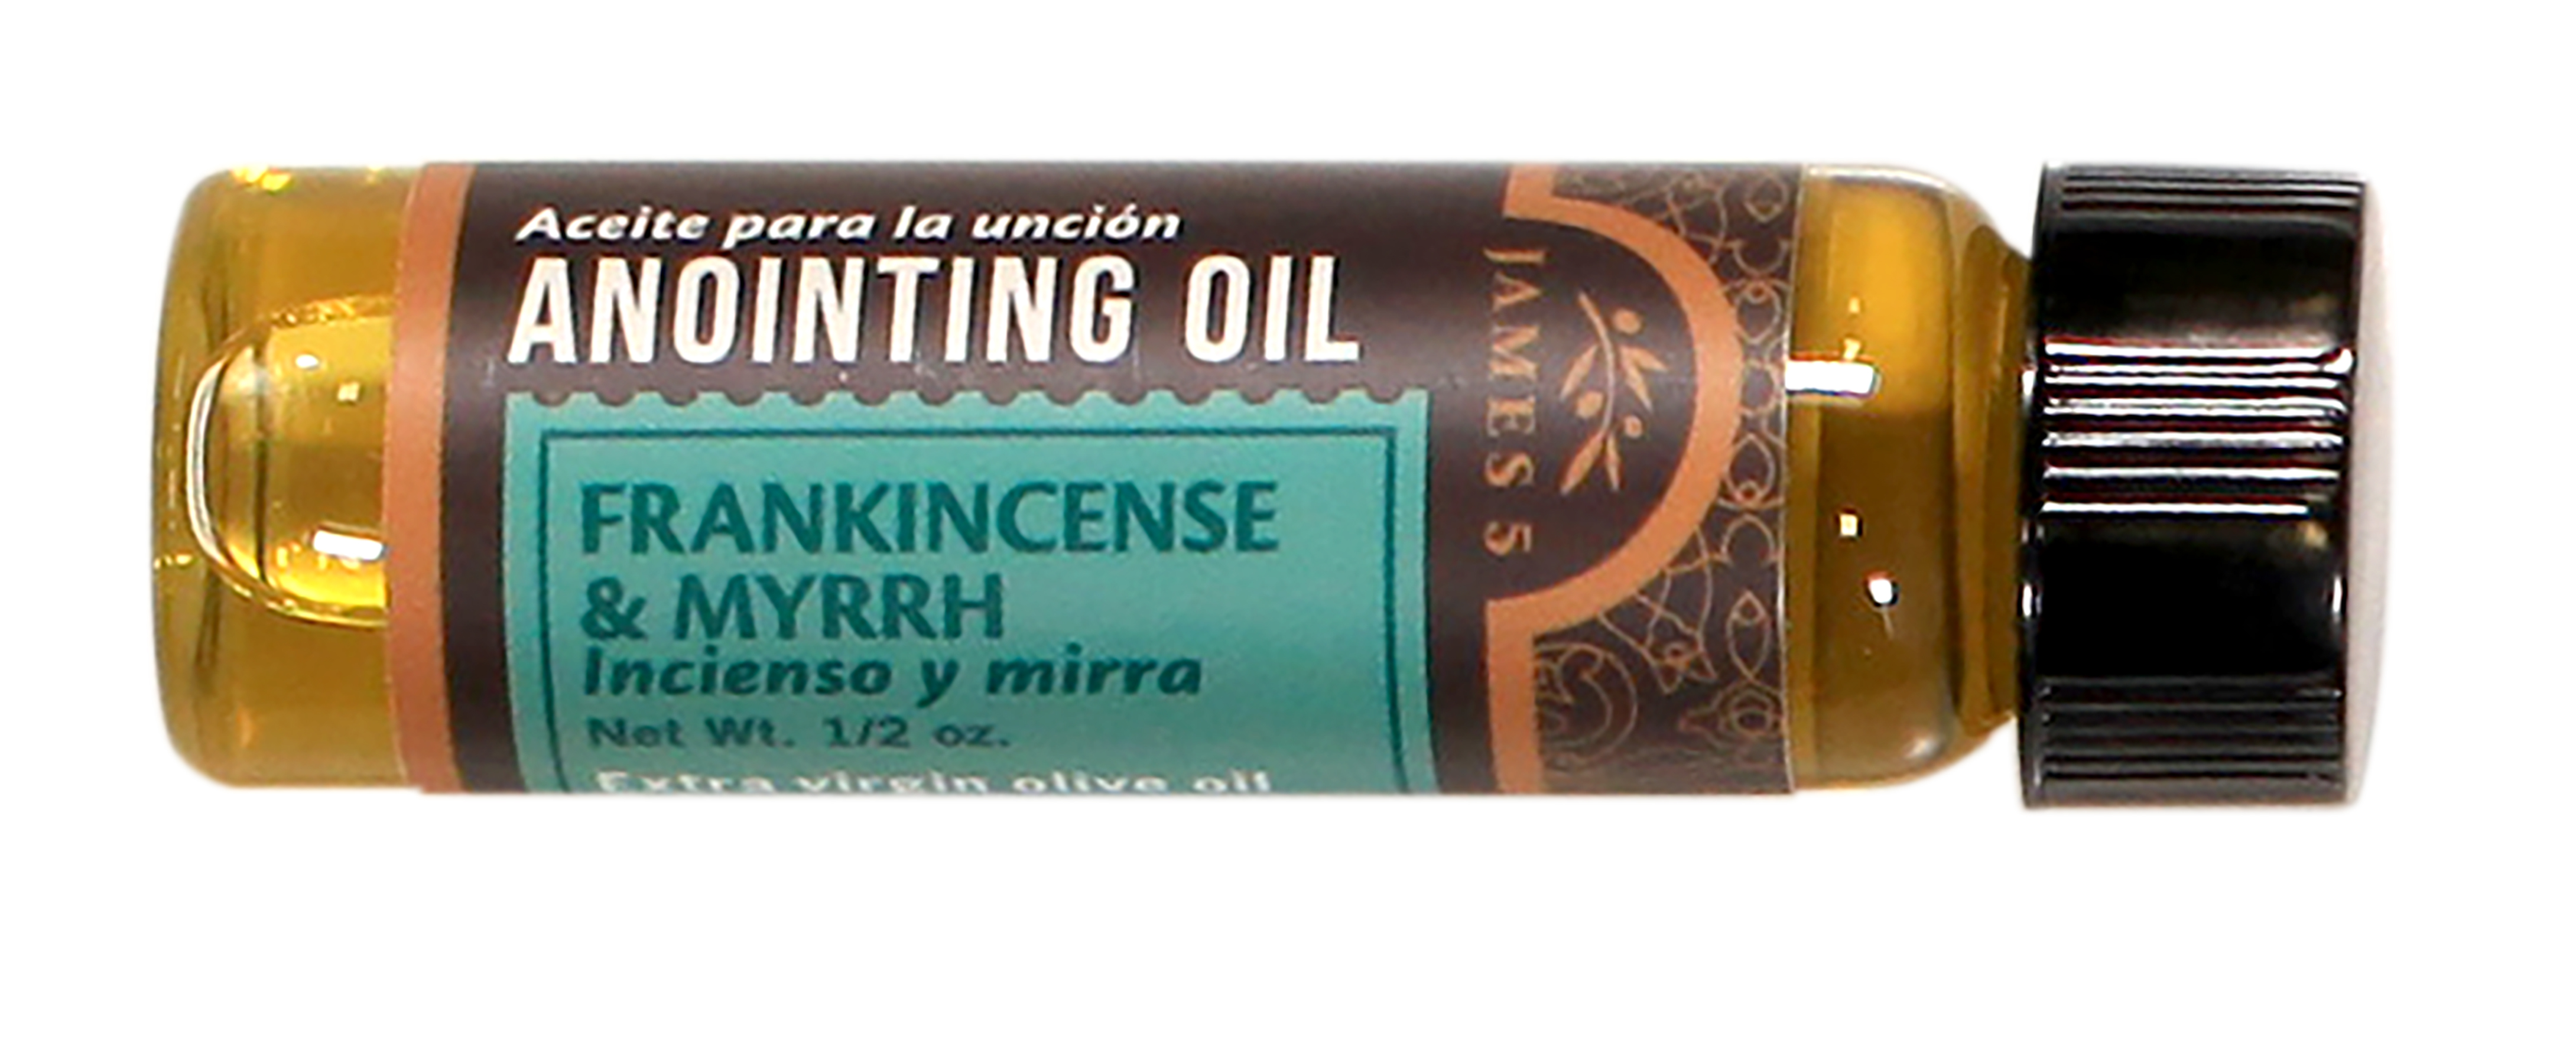 Frankincense & Myrrh Anointing Oil - 2 Oz bottle - Shofars From Afar